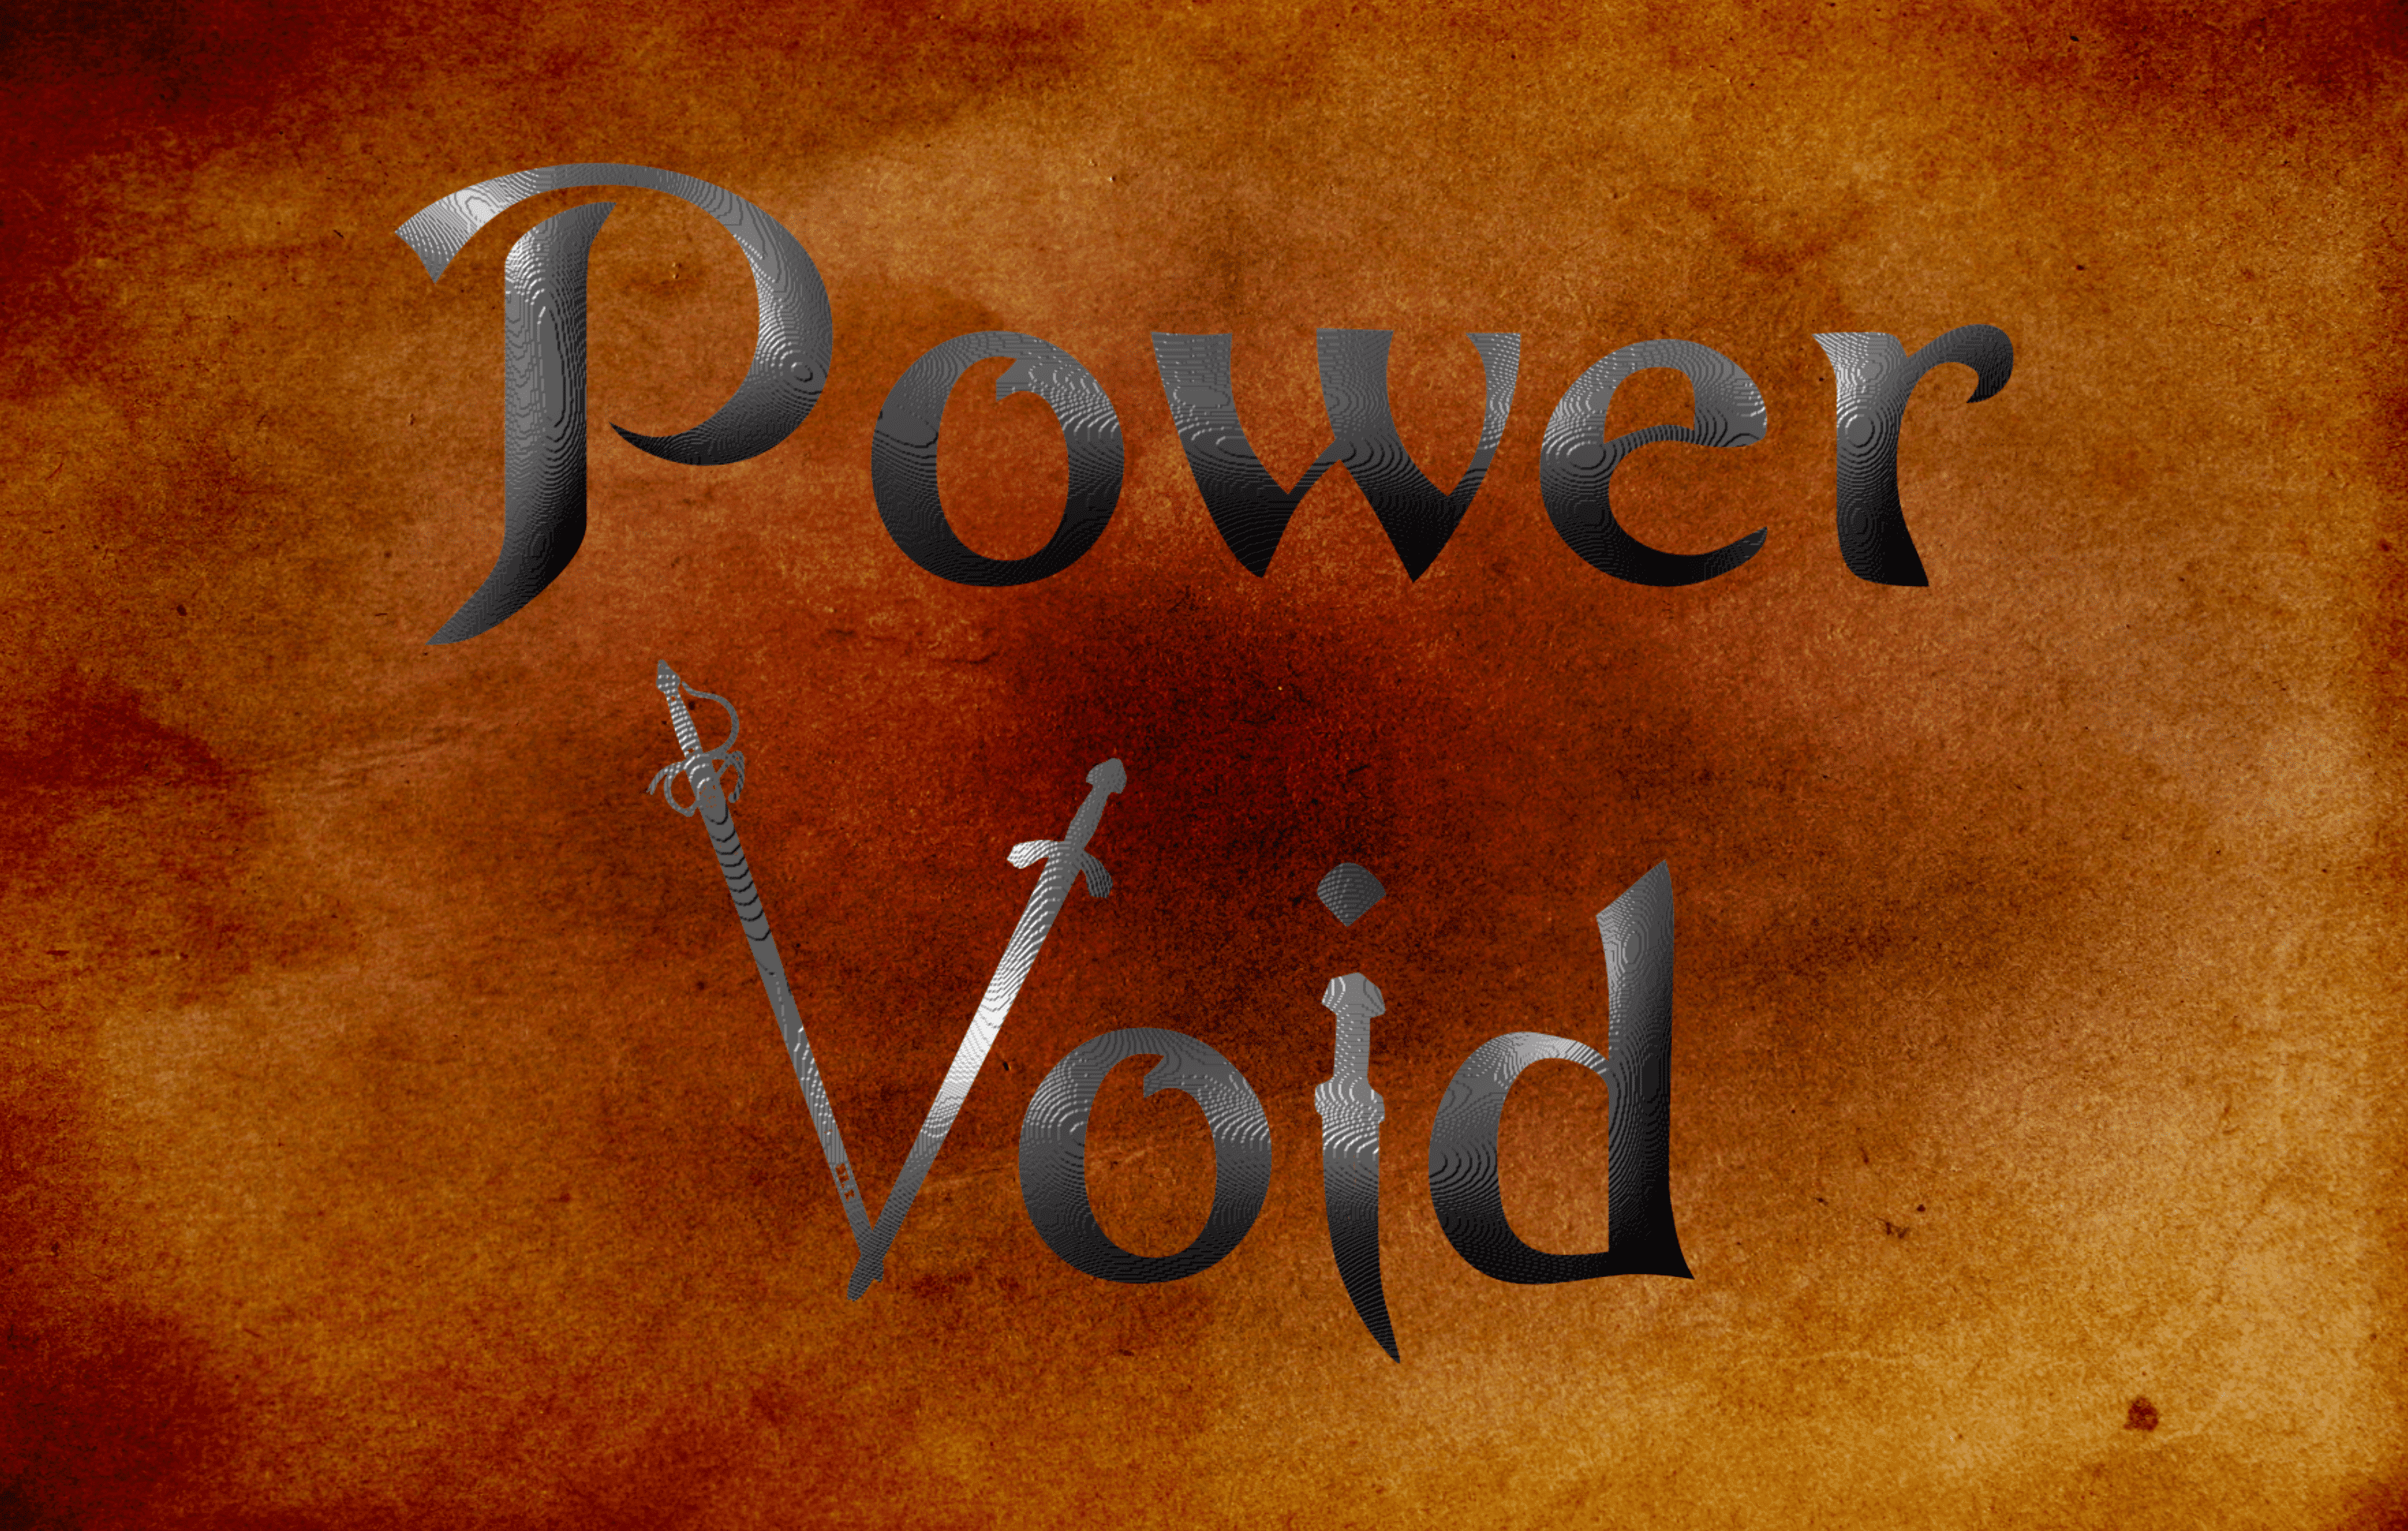 Power Void